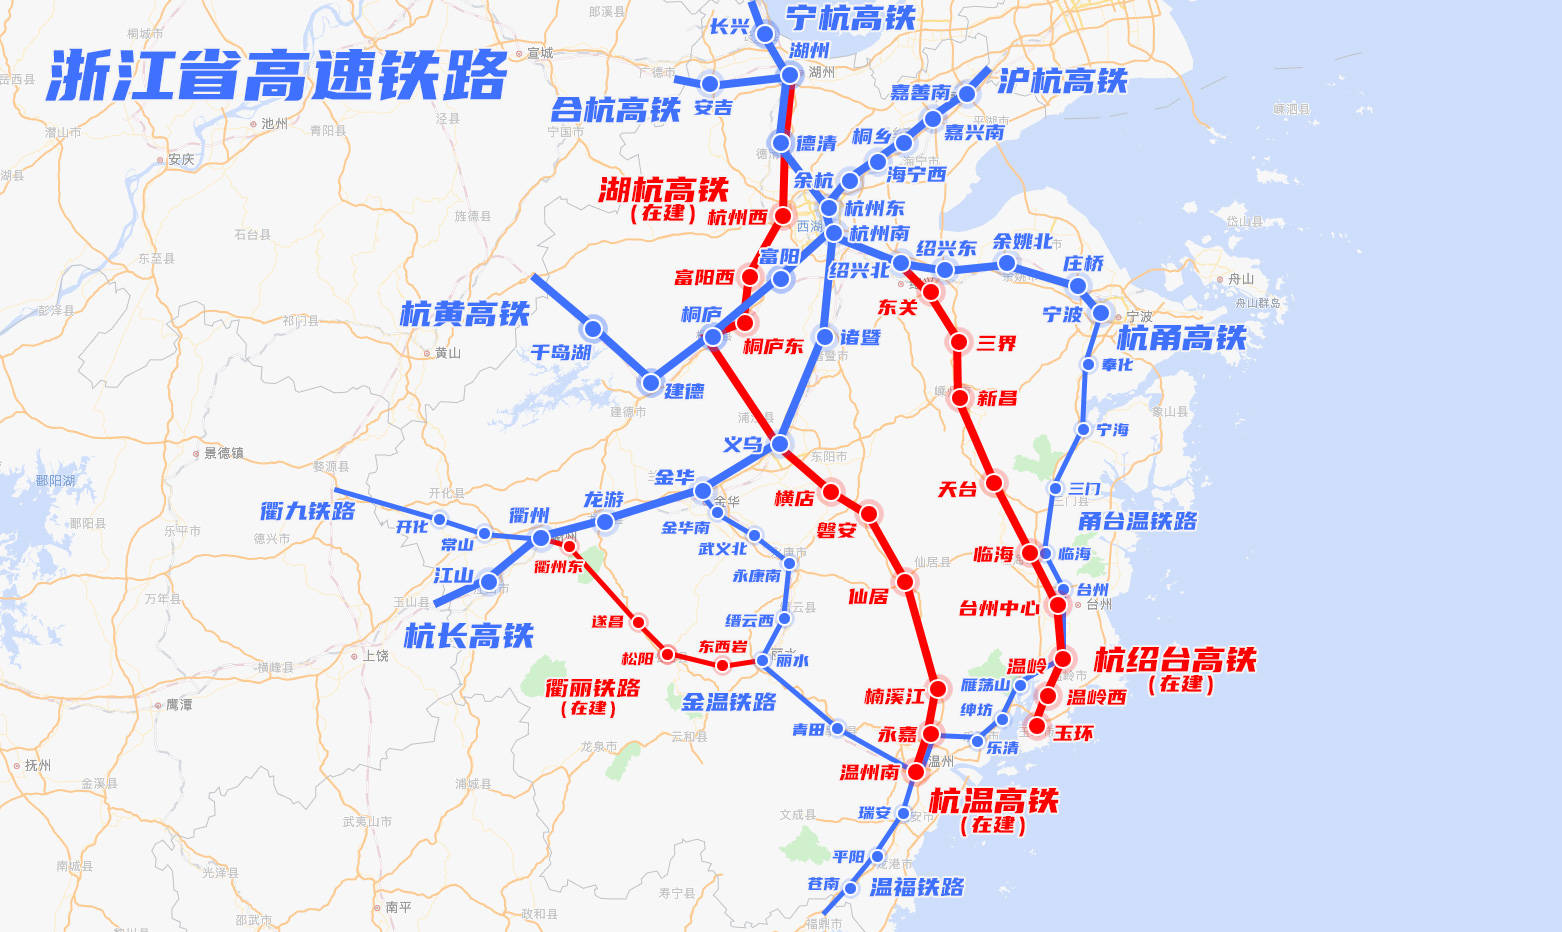 浙江省高铁快铁城际铁路线网运行建设规划图_手机搜狐网